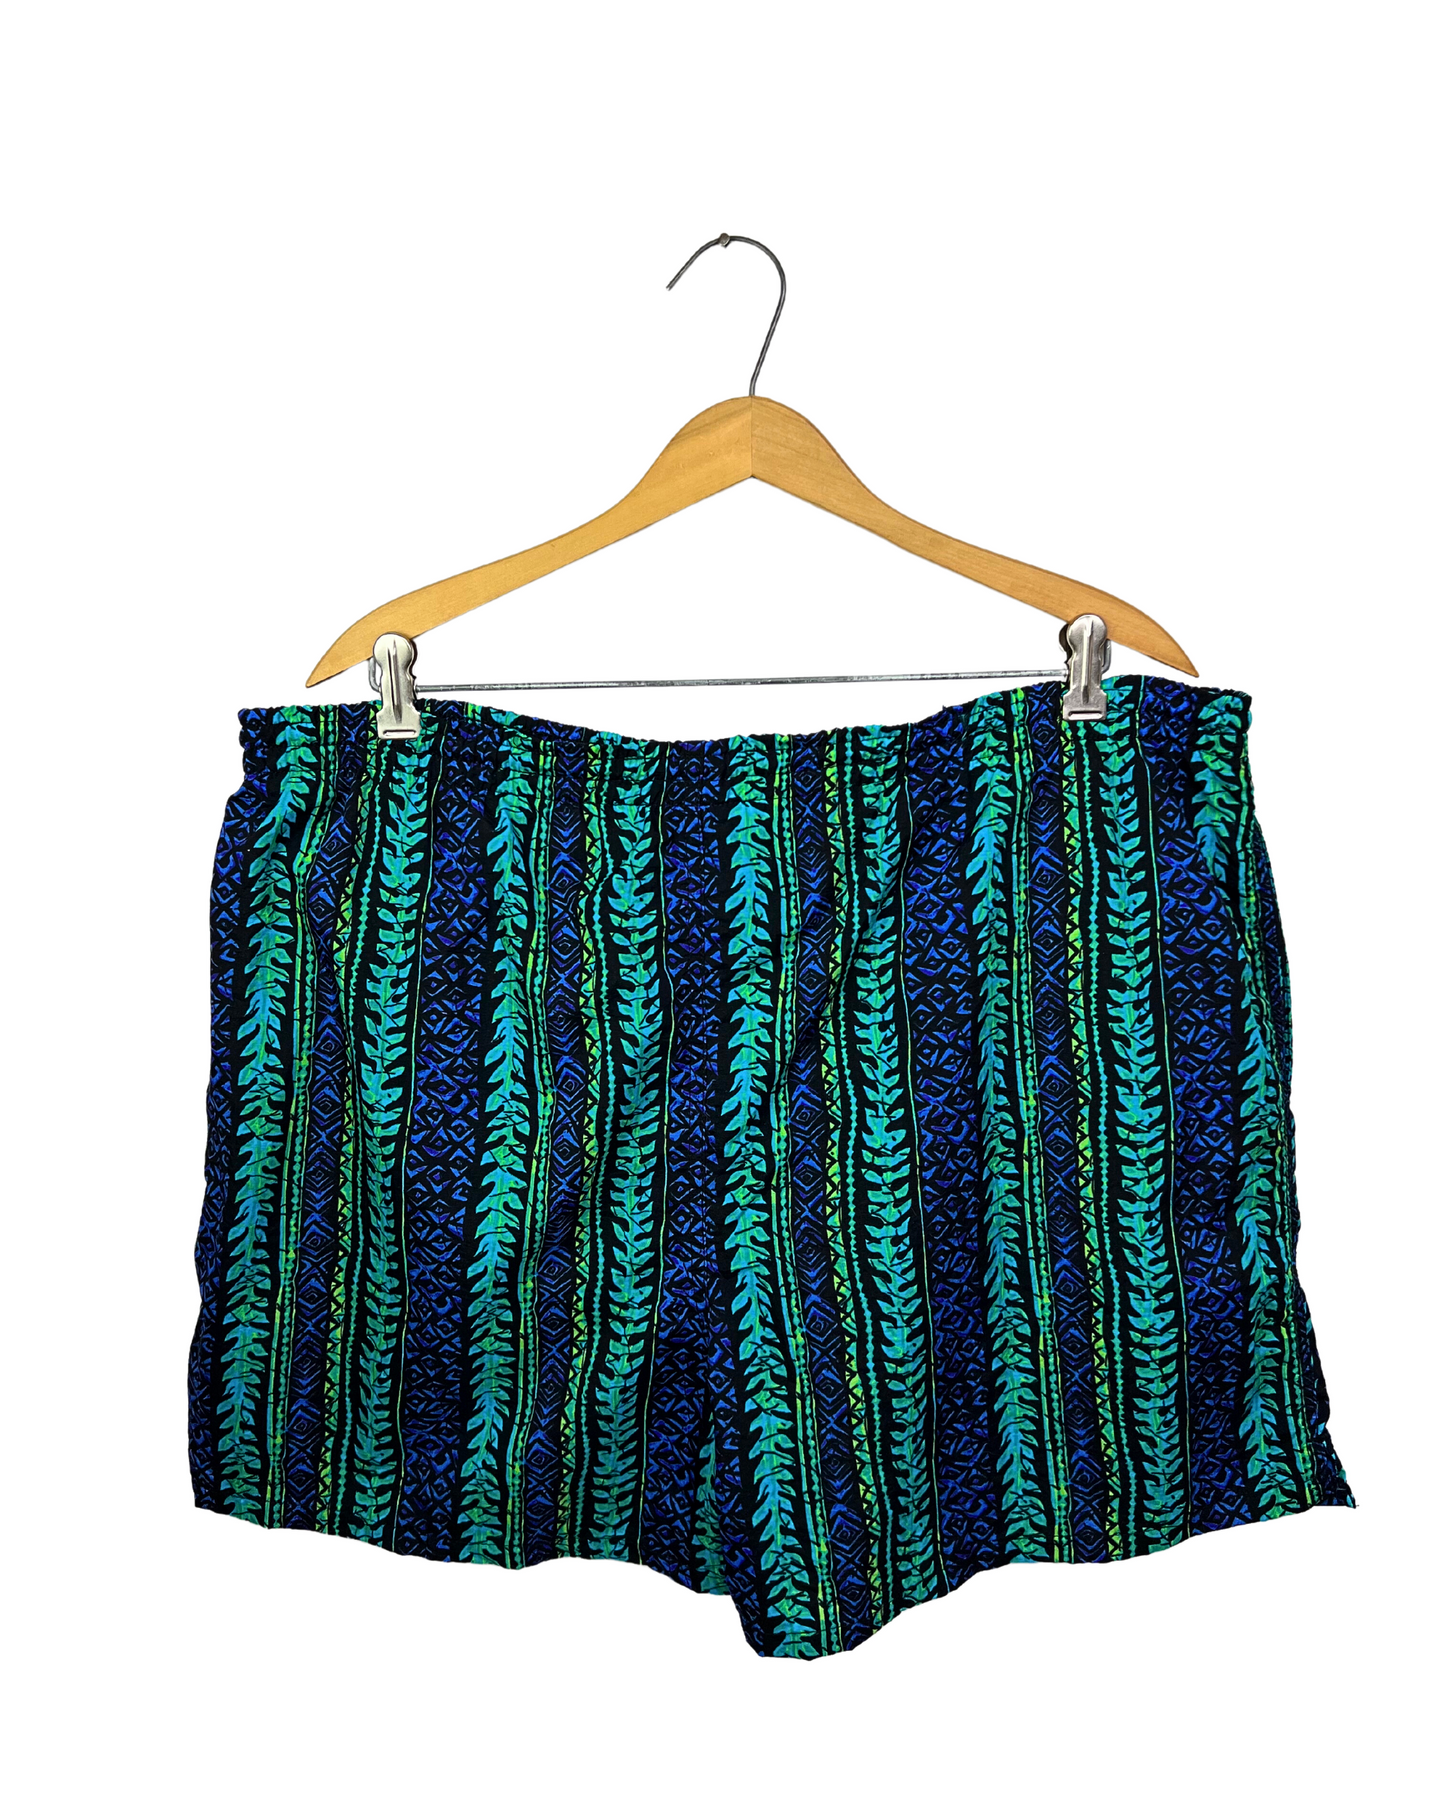 90's Neon 4” Swim Trunks with pockets Size XL